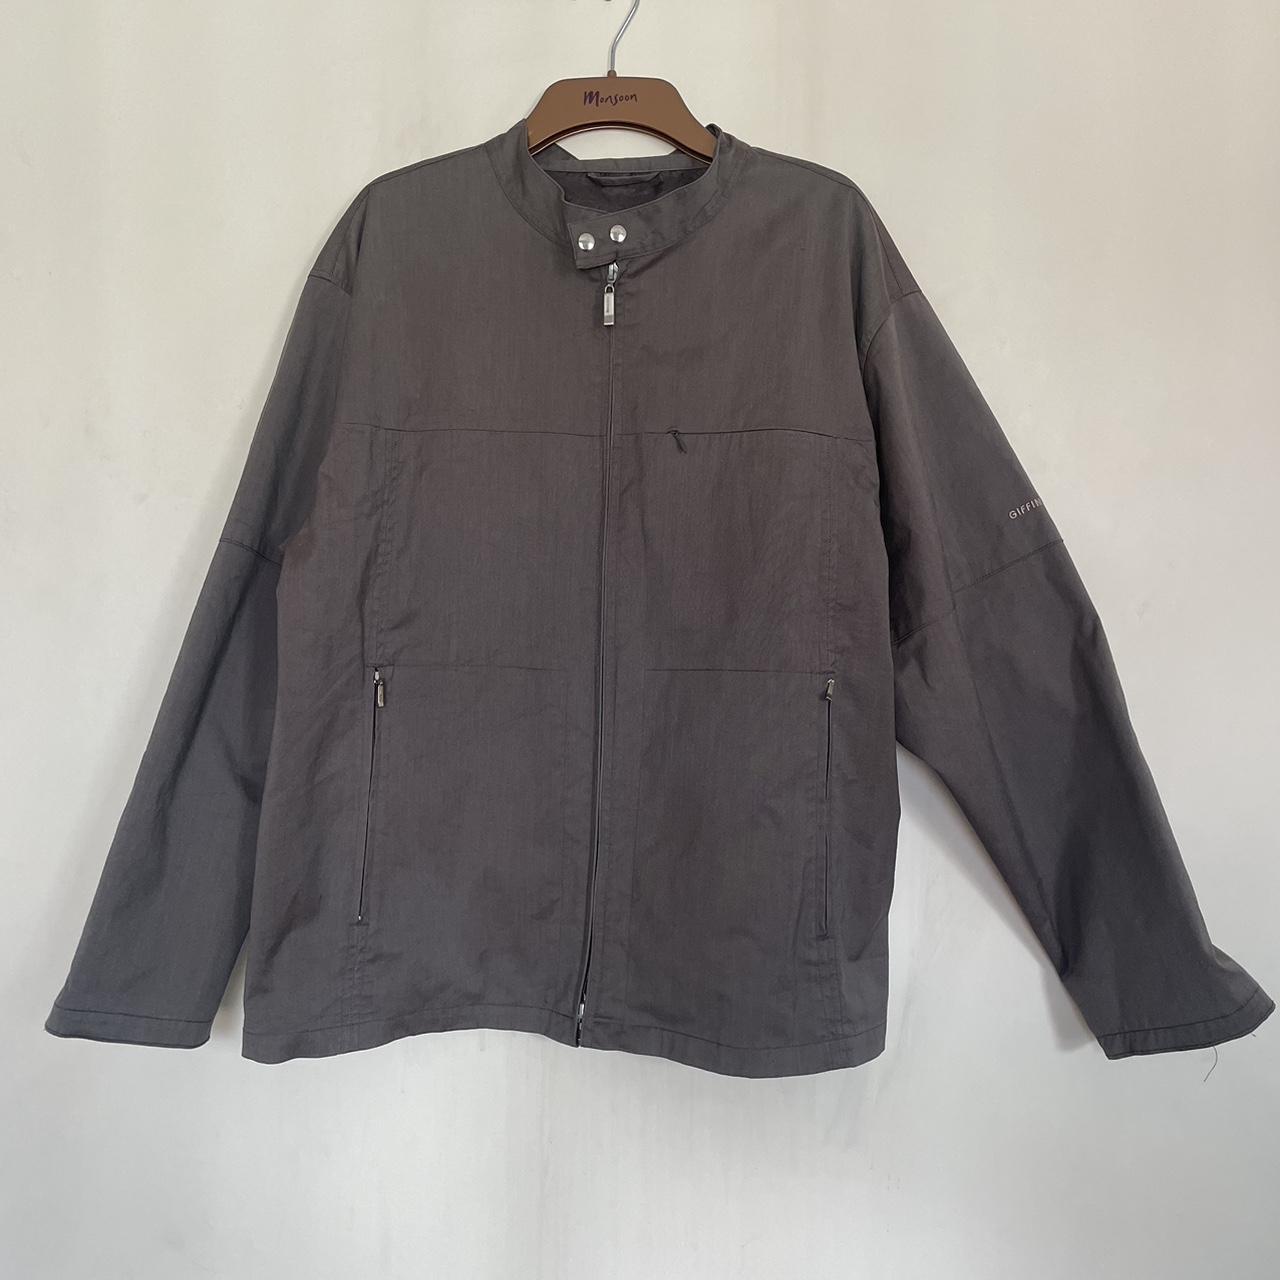 Giffini pewter minimalist jacket size XL plenty of... - Depop